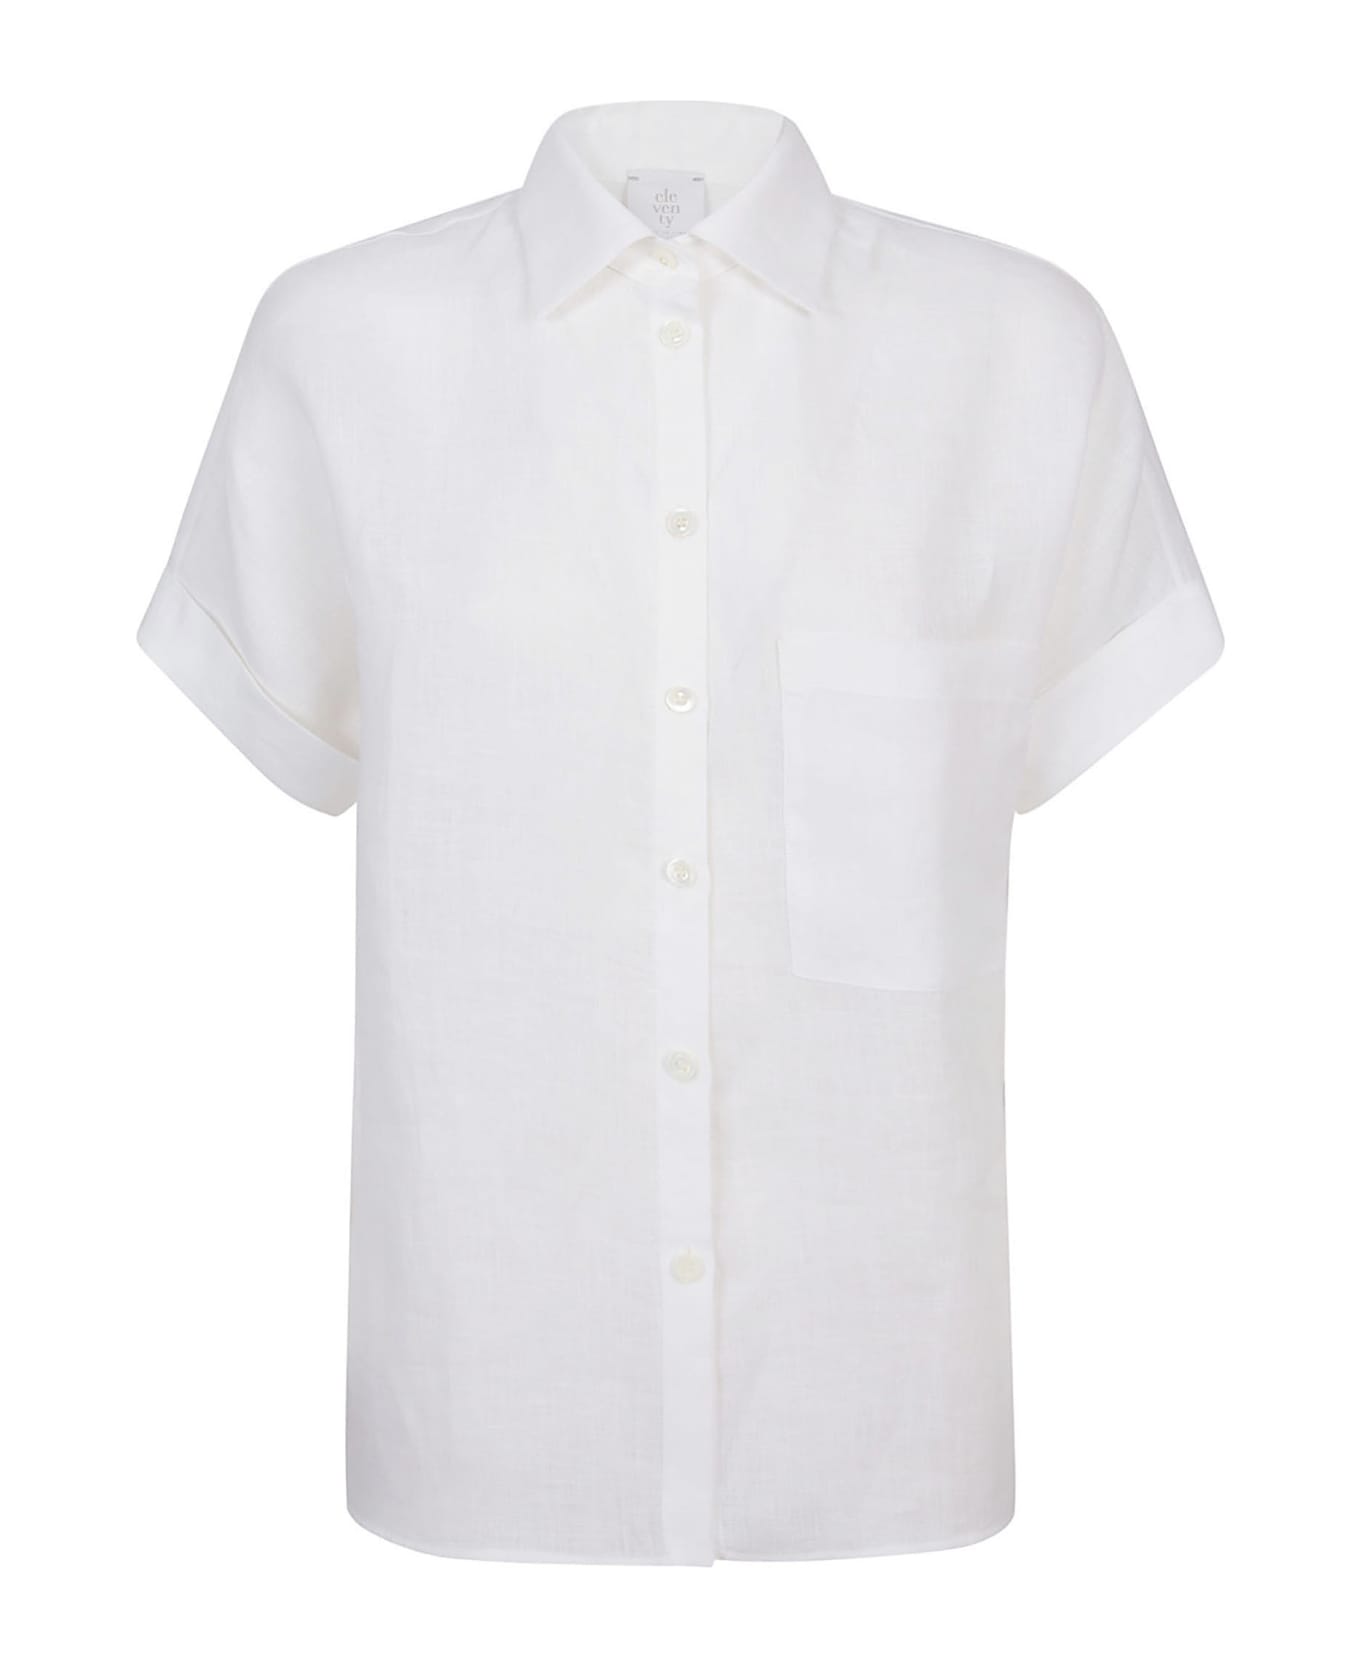 Eleventy Shirts White - White